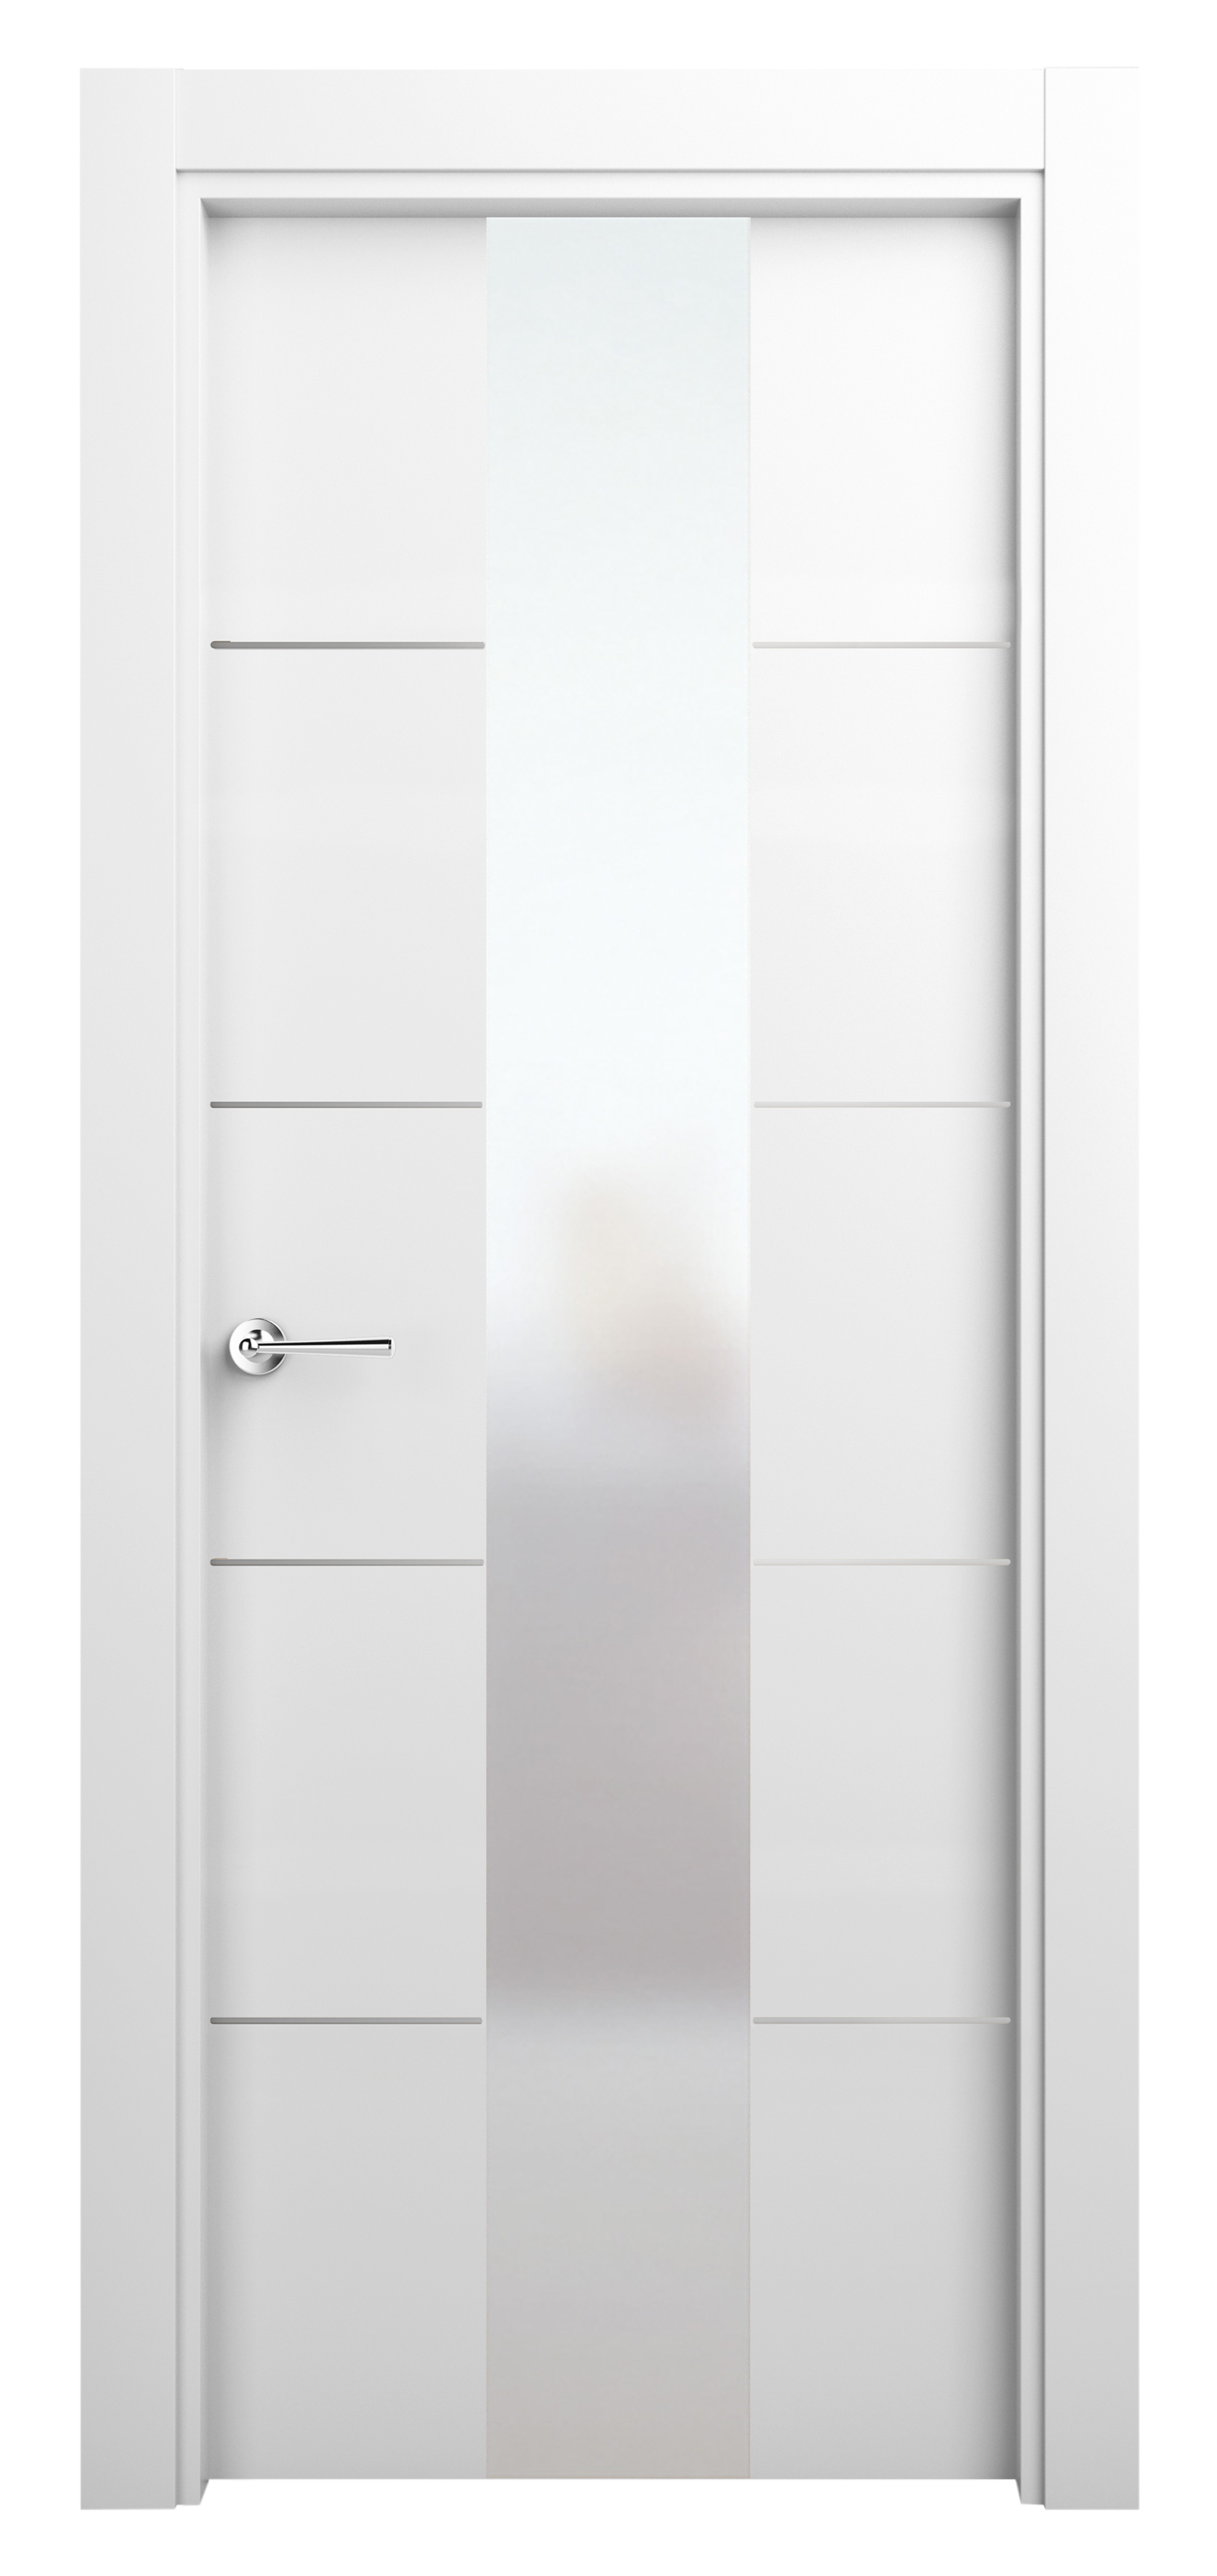 Puerta abatible paris blanca premium con cristal blanco izquierda de 62.5 cm